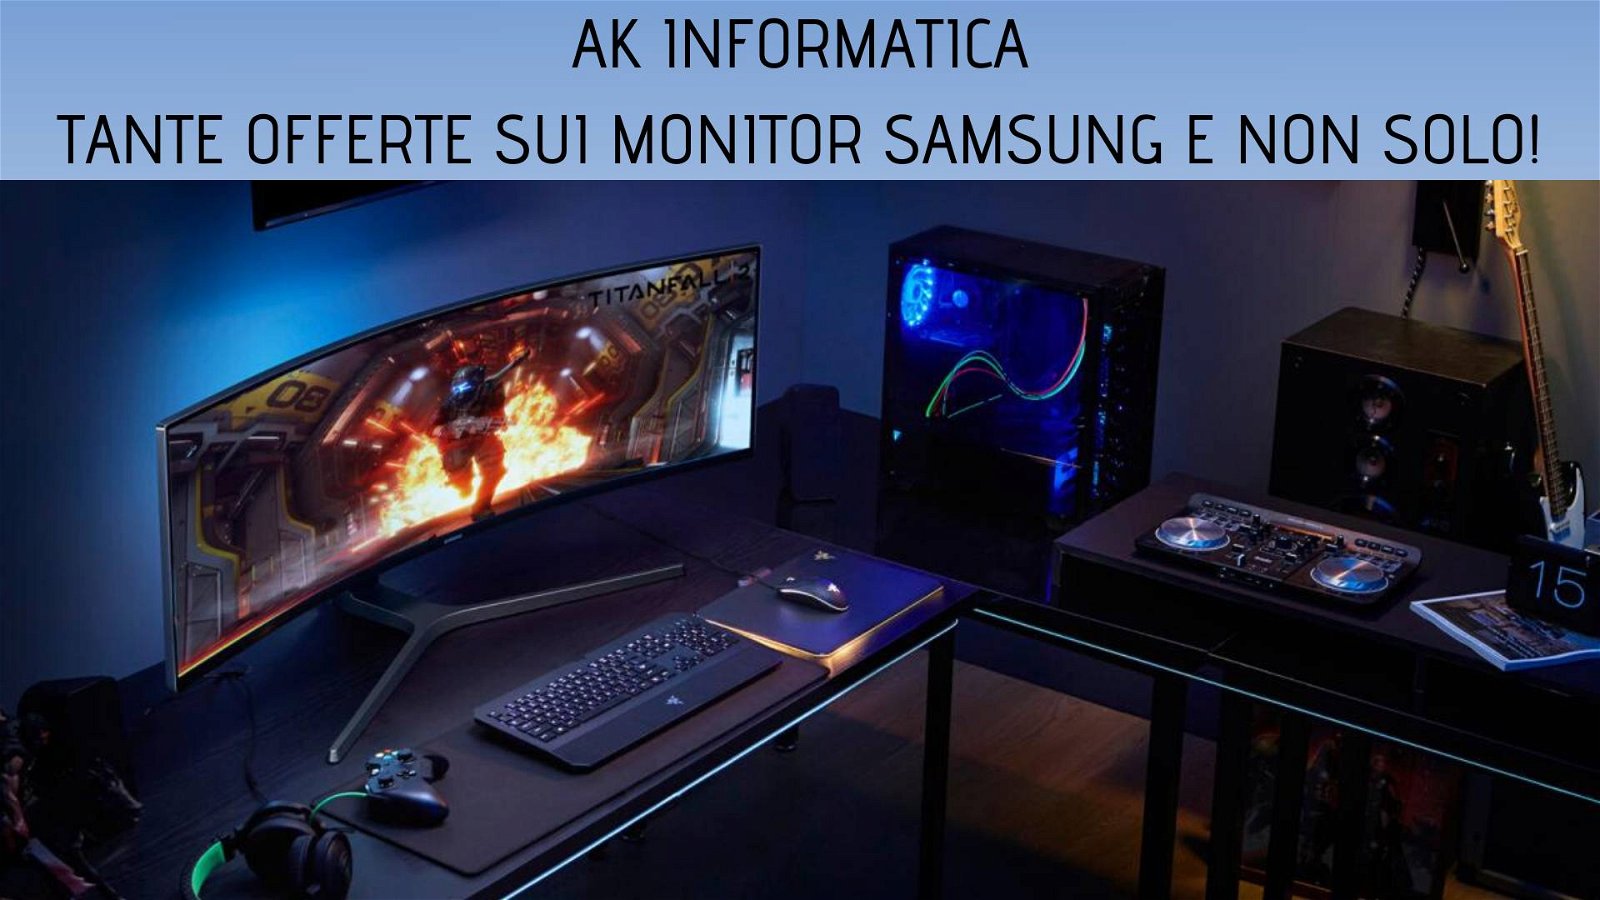 Immagine di Super sconti sui monitor gaming Samsung da AK Informatica